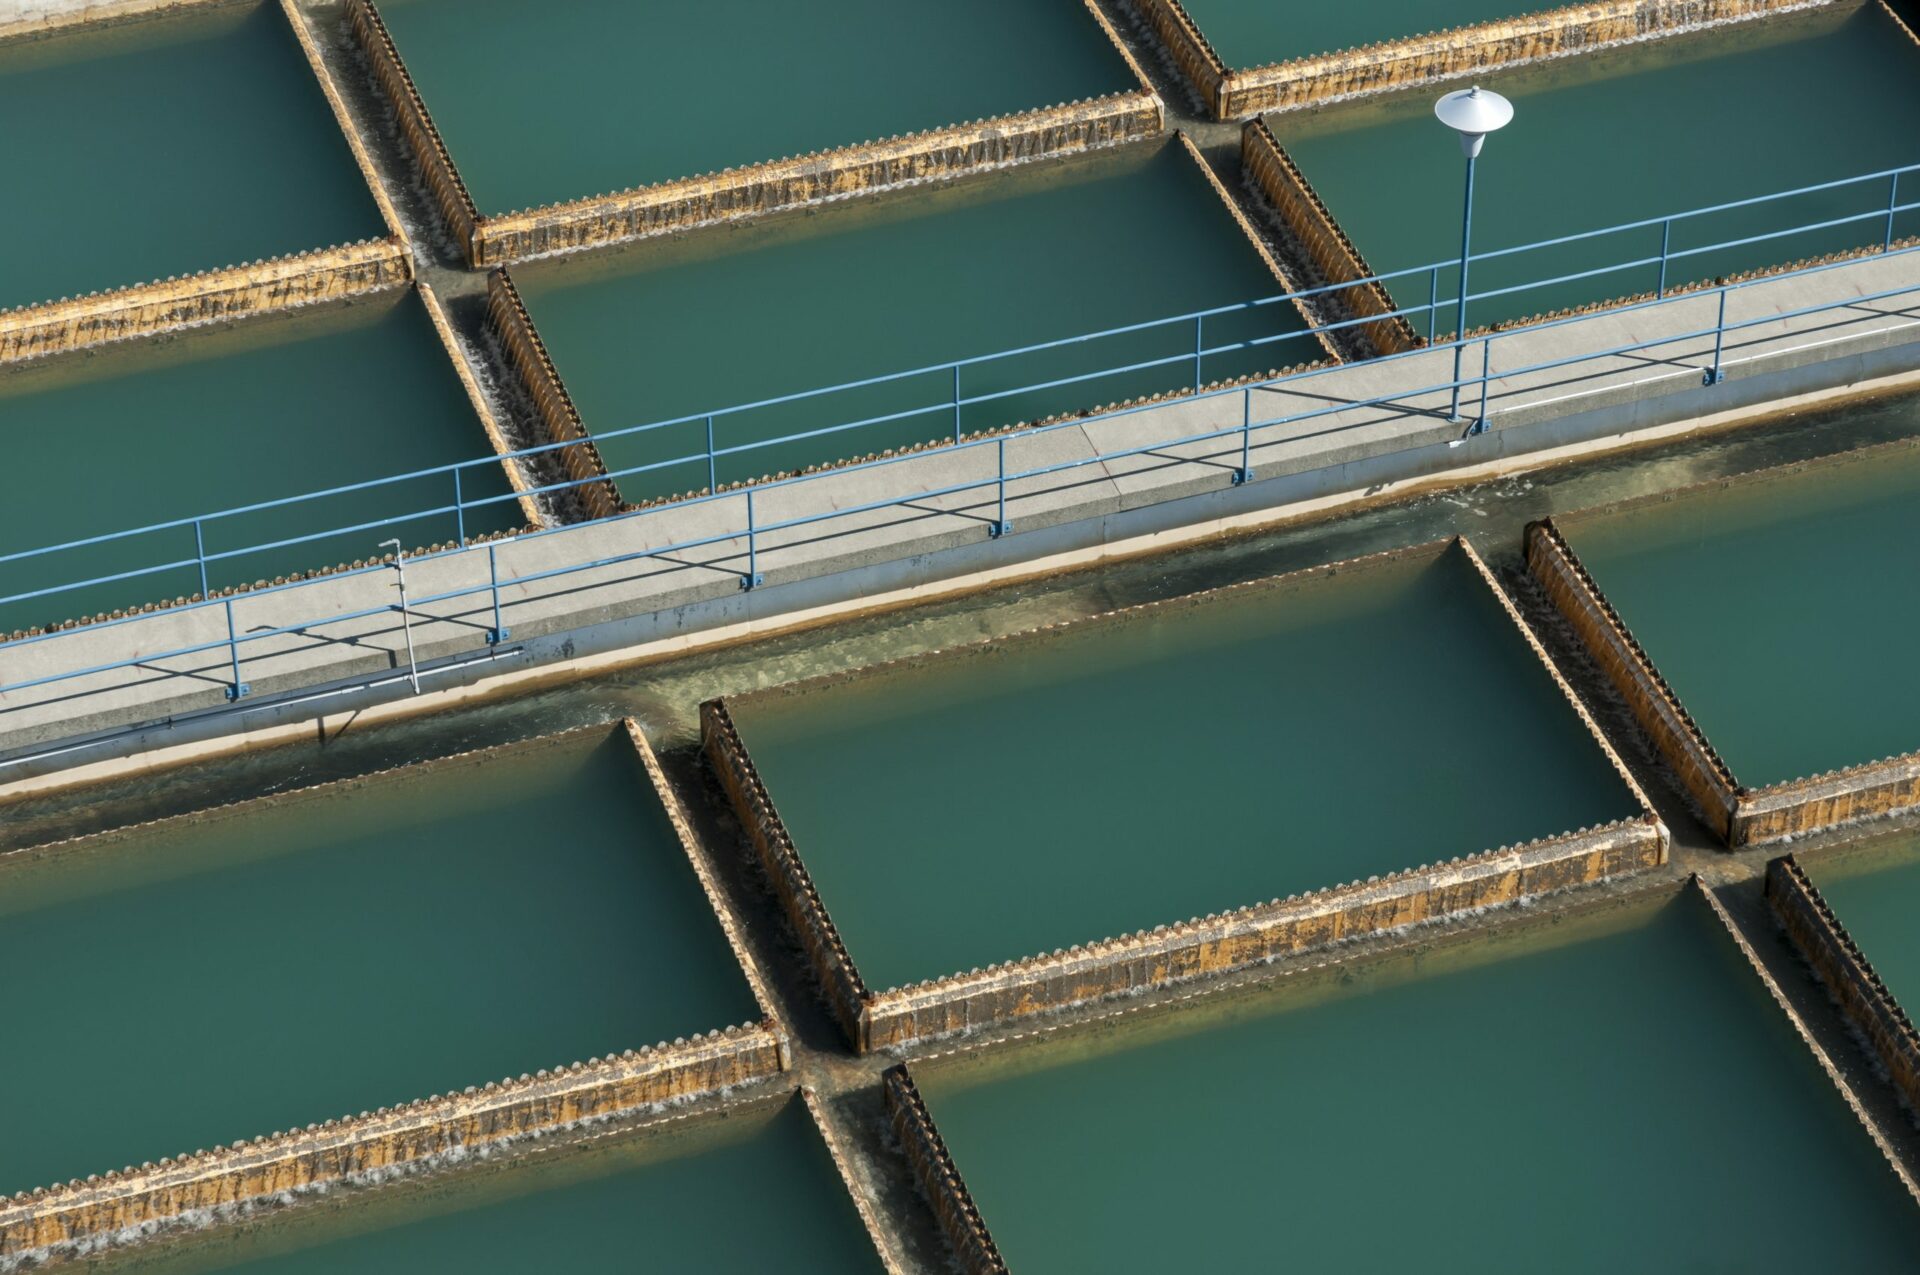 vista aérea da passarela sobre os tanques de tratamento de água 2022 03 04 02 32 21 utc em escala